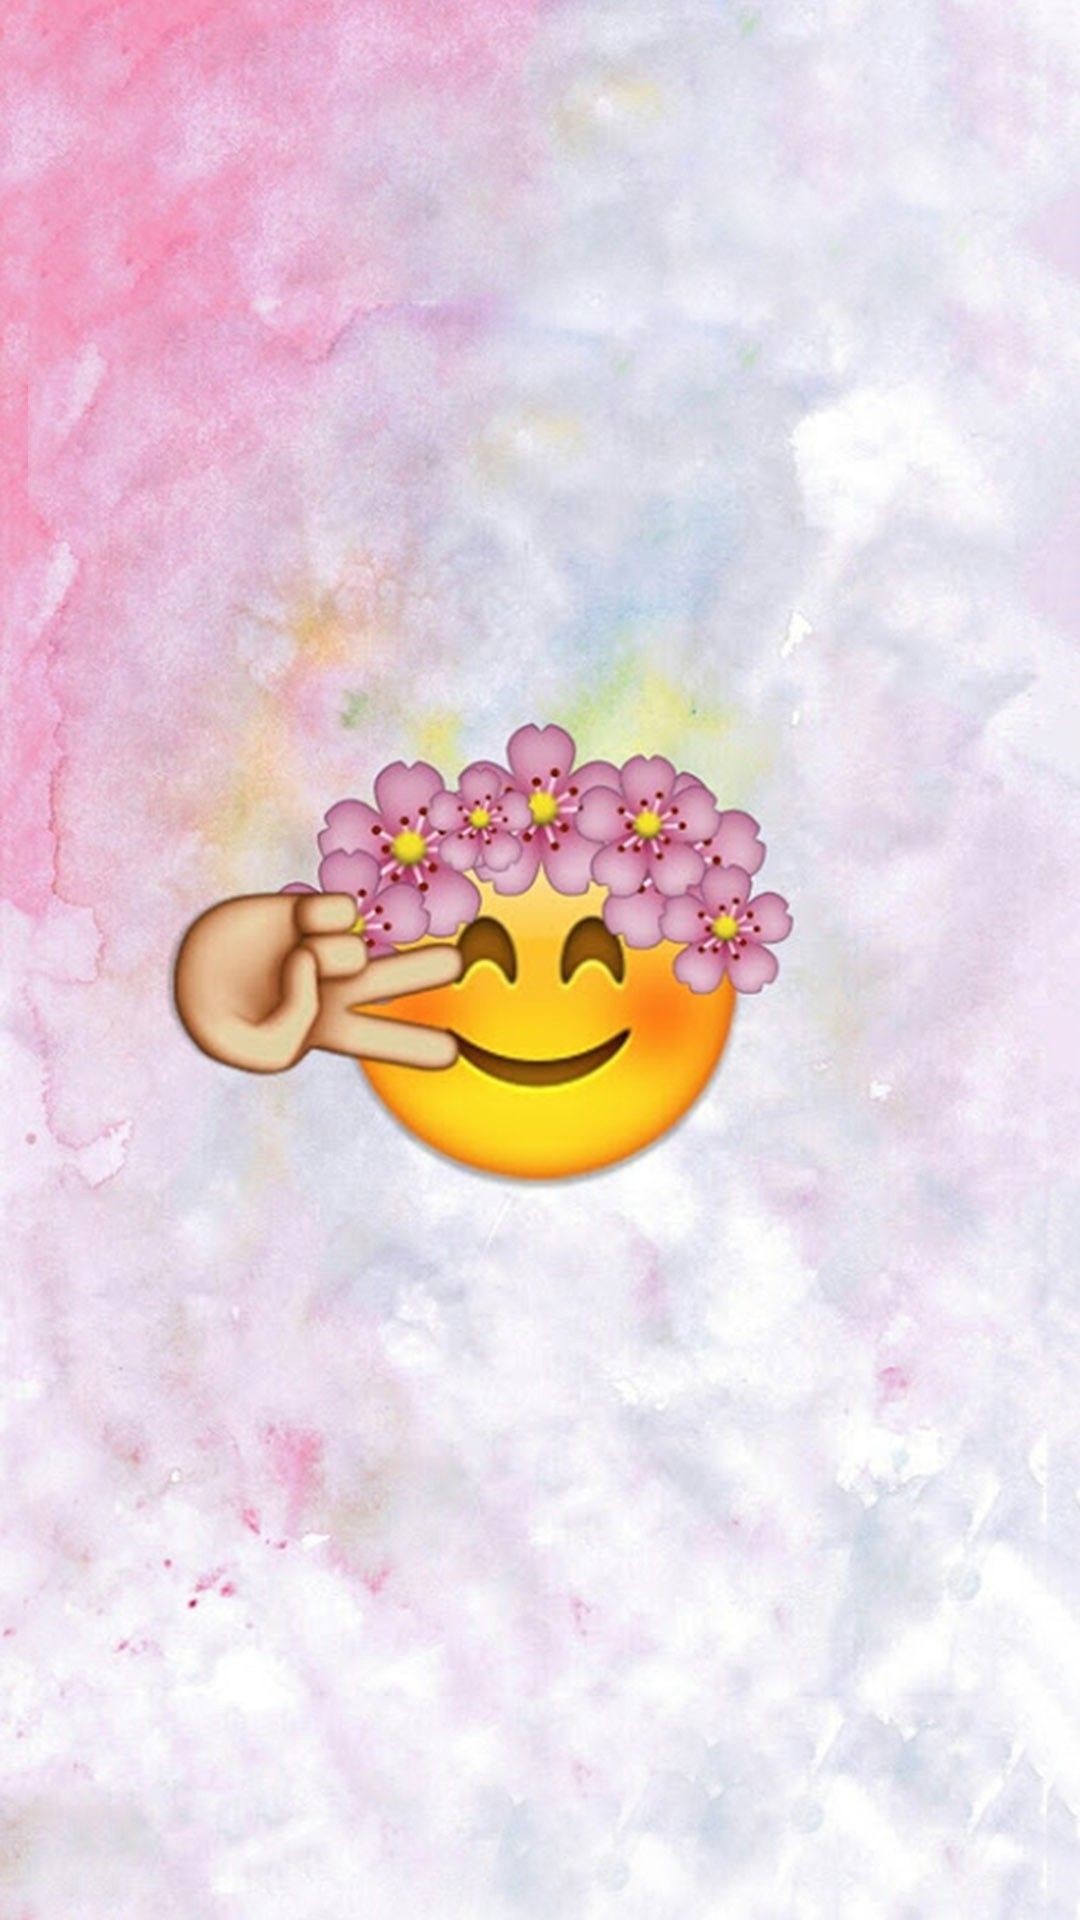 Cute Emojis Wallpapers Wallpapers